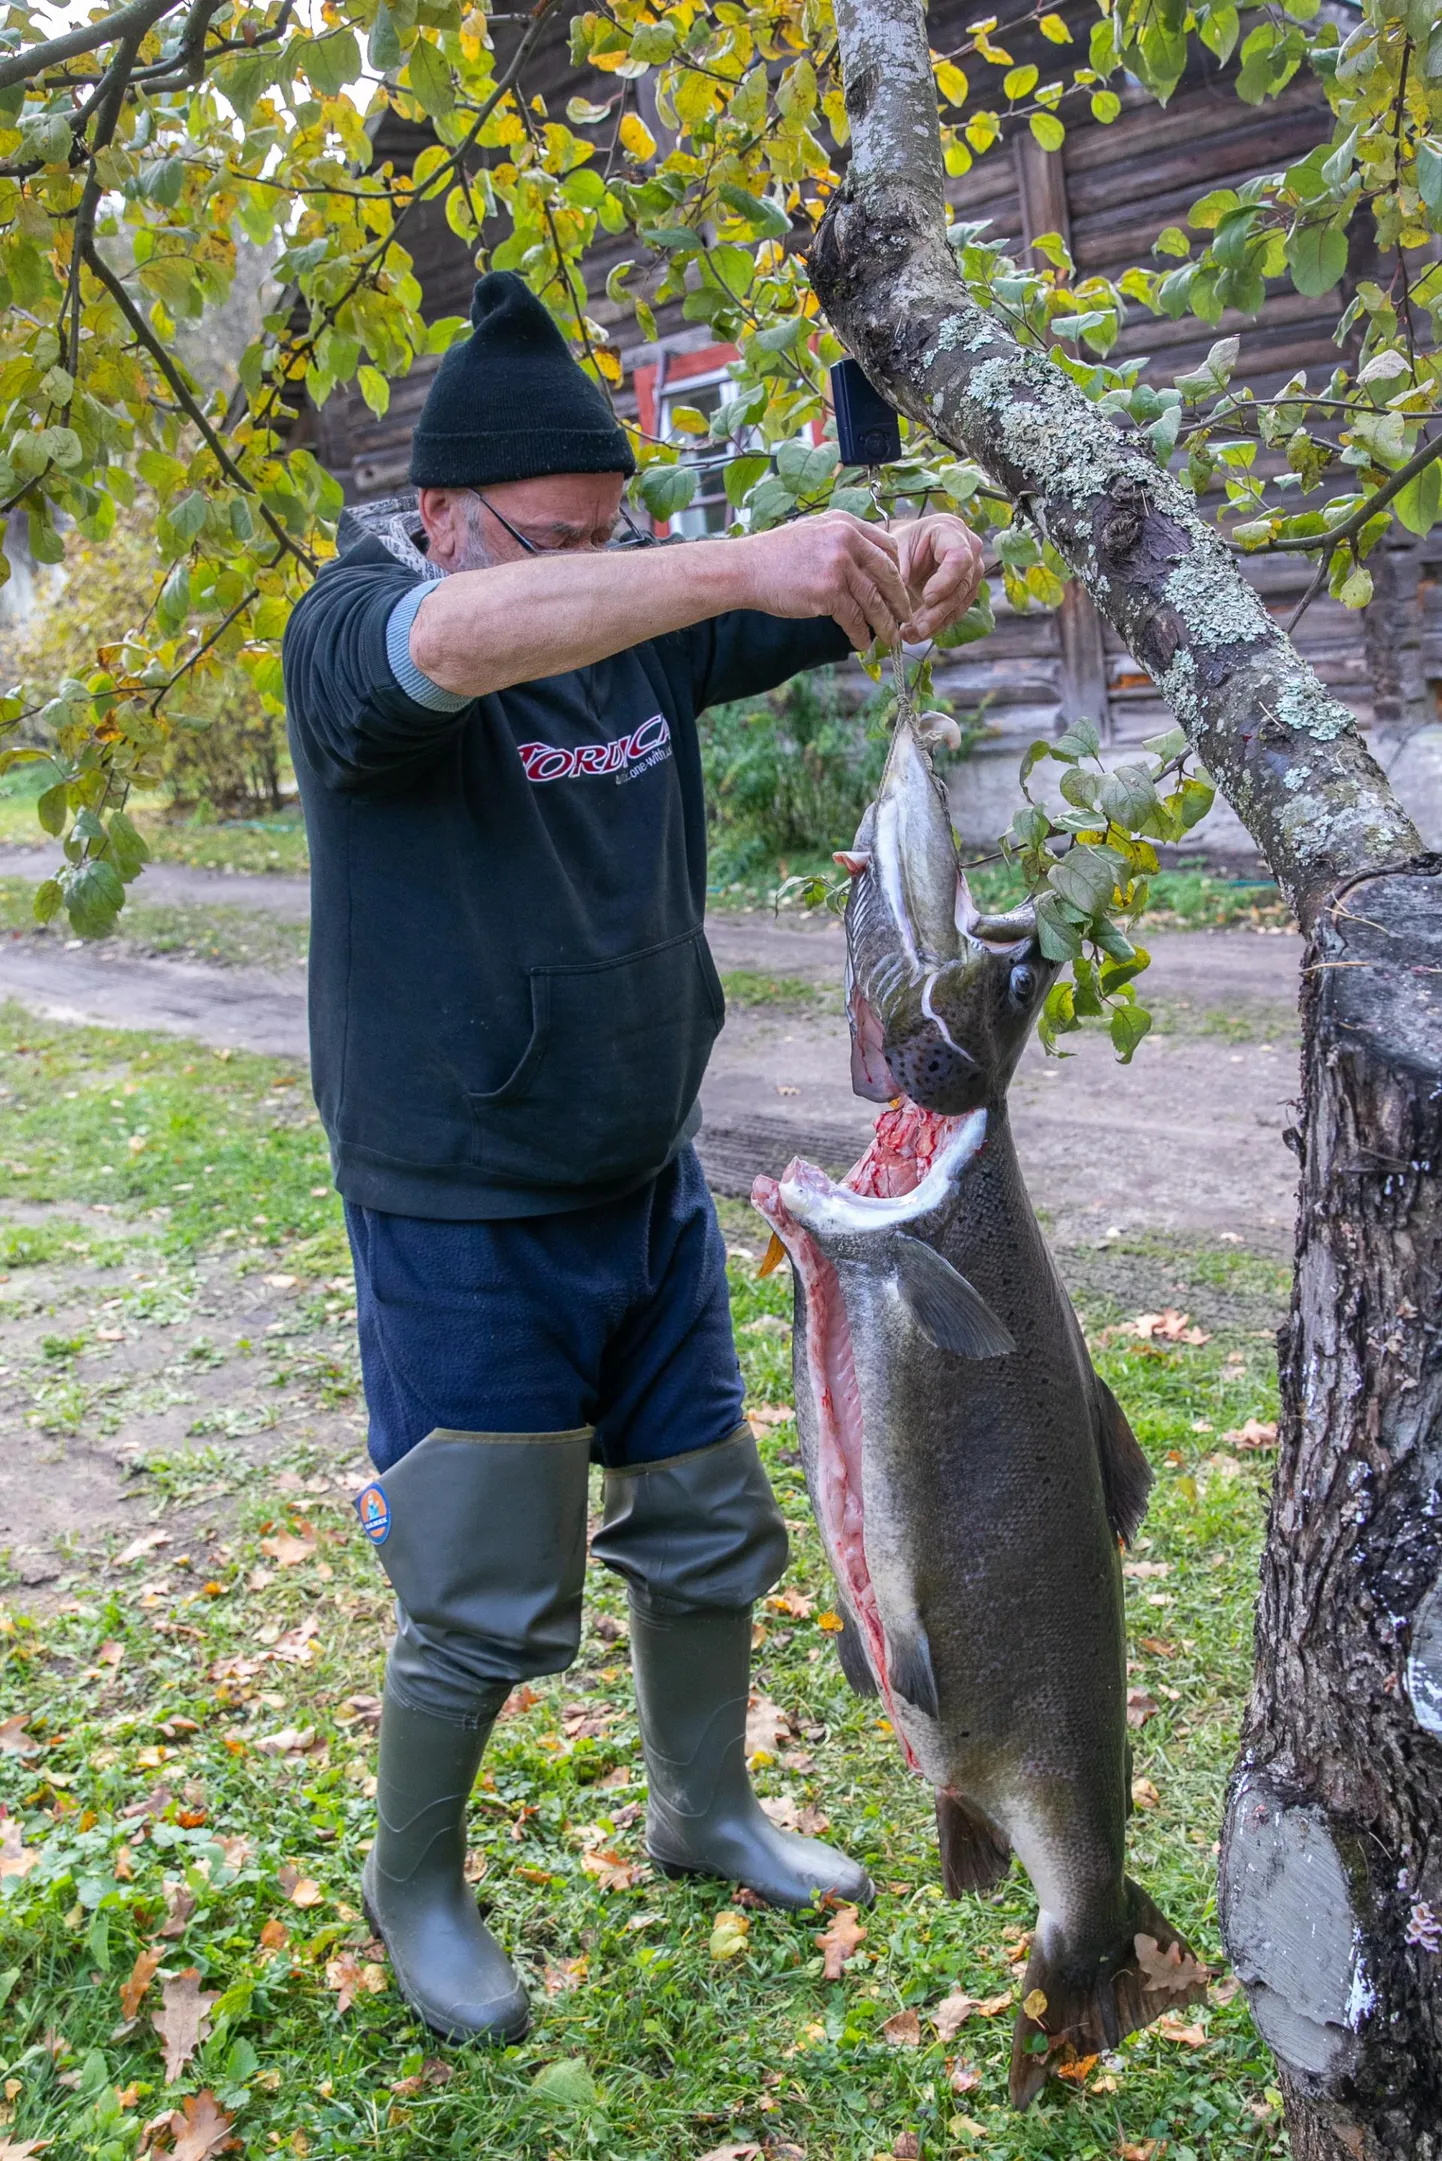 Pildil kalamees Mati oma saagiga, mis ka roogitud peast kaalus ligi 19,5 kilo.